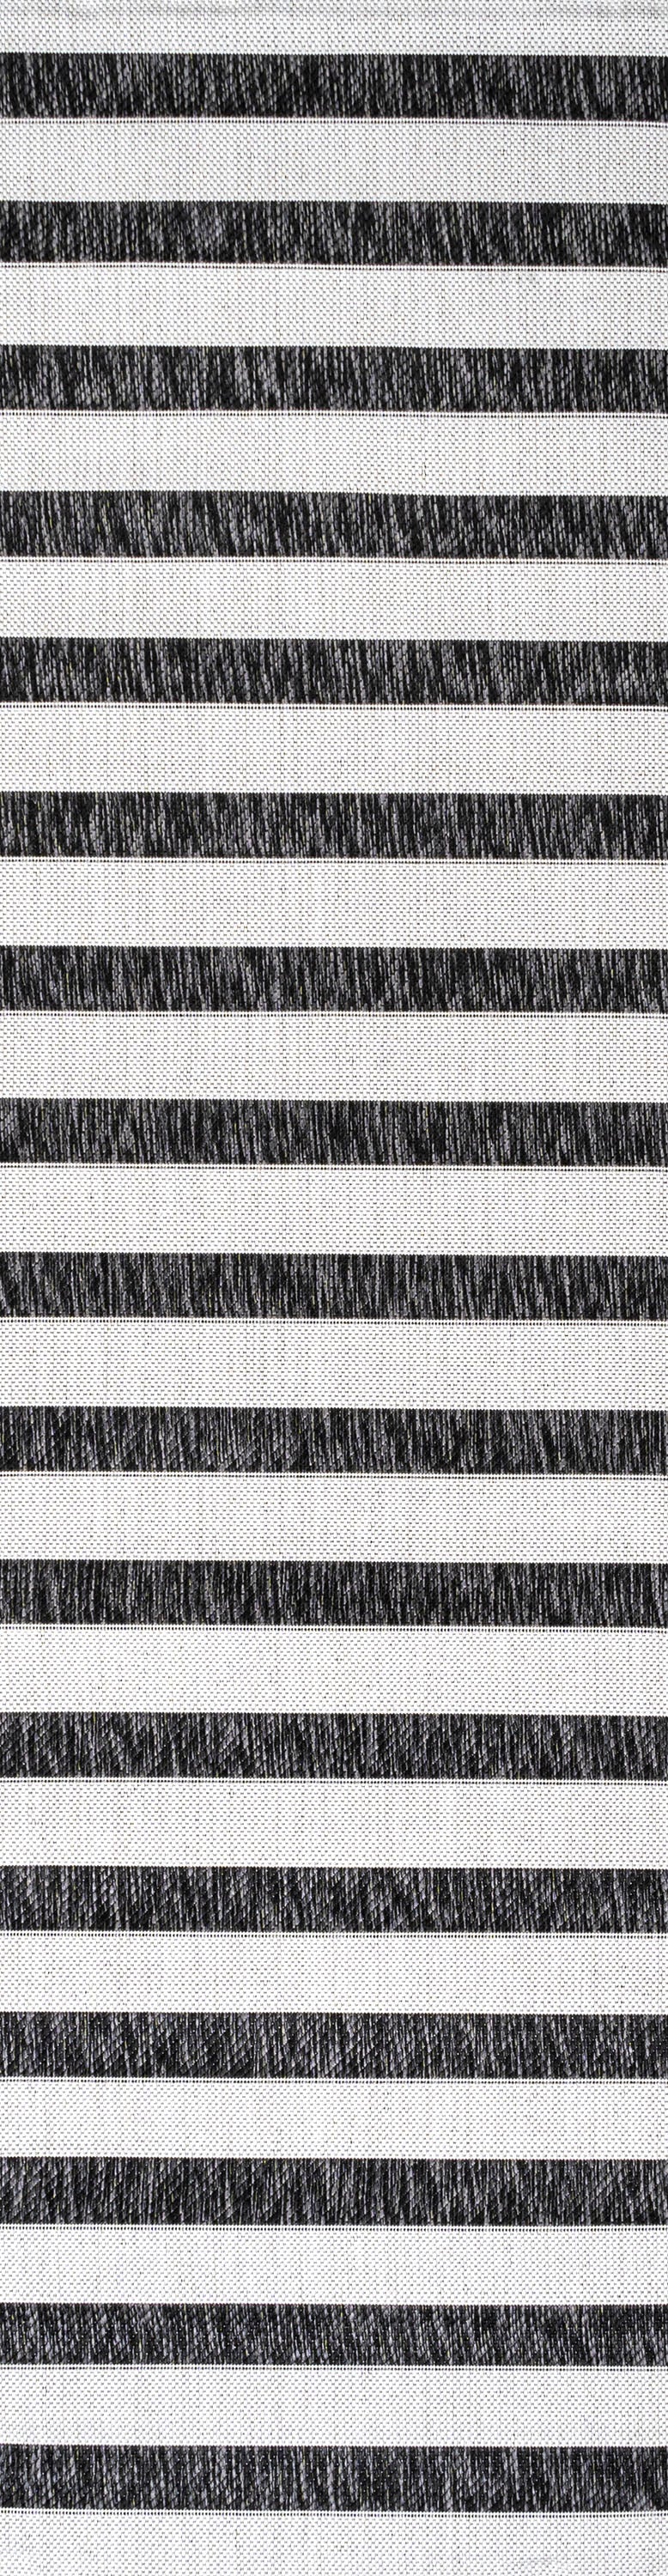 Wide Stripe Indoor/Outdoor Area Rug (2 Colors, 6 Sizes)